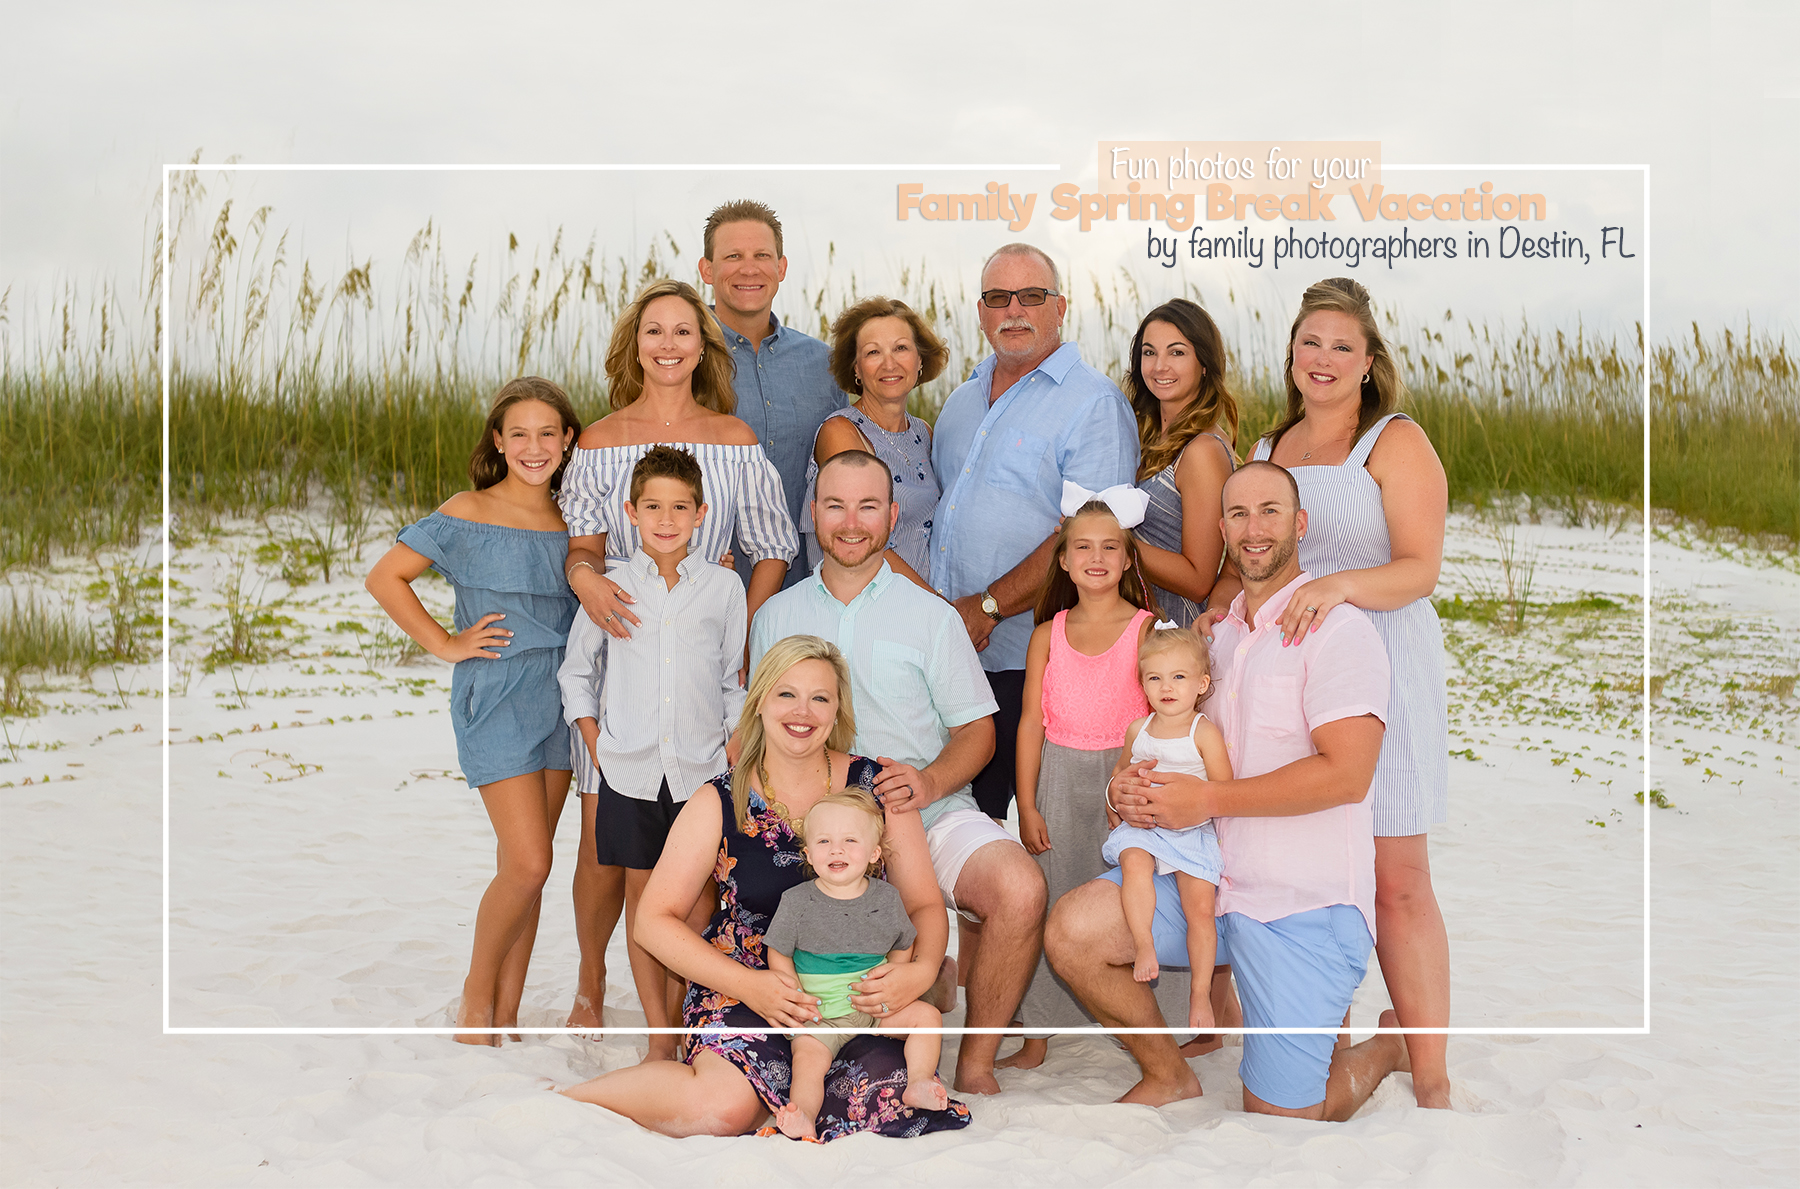 A family celebrating Spring Break in Destin, Florida - family beach photos